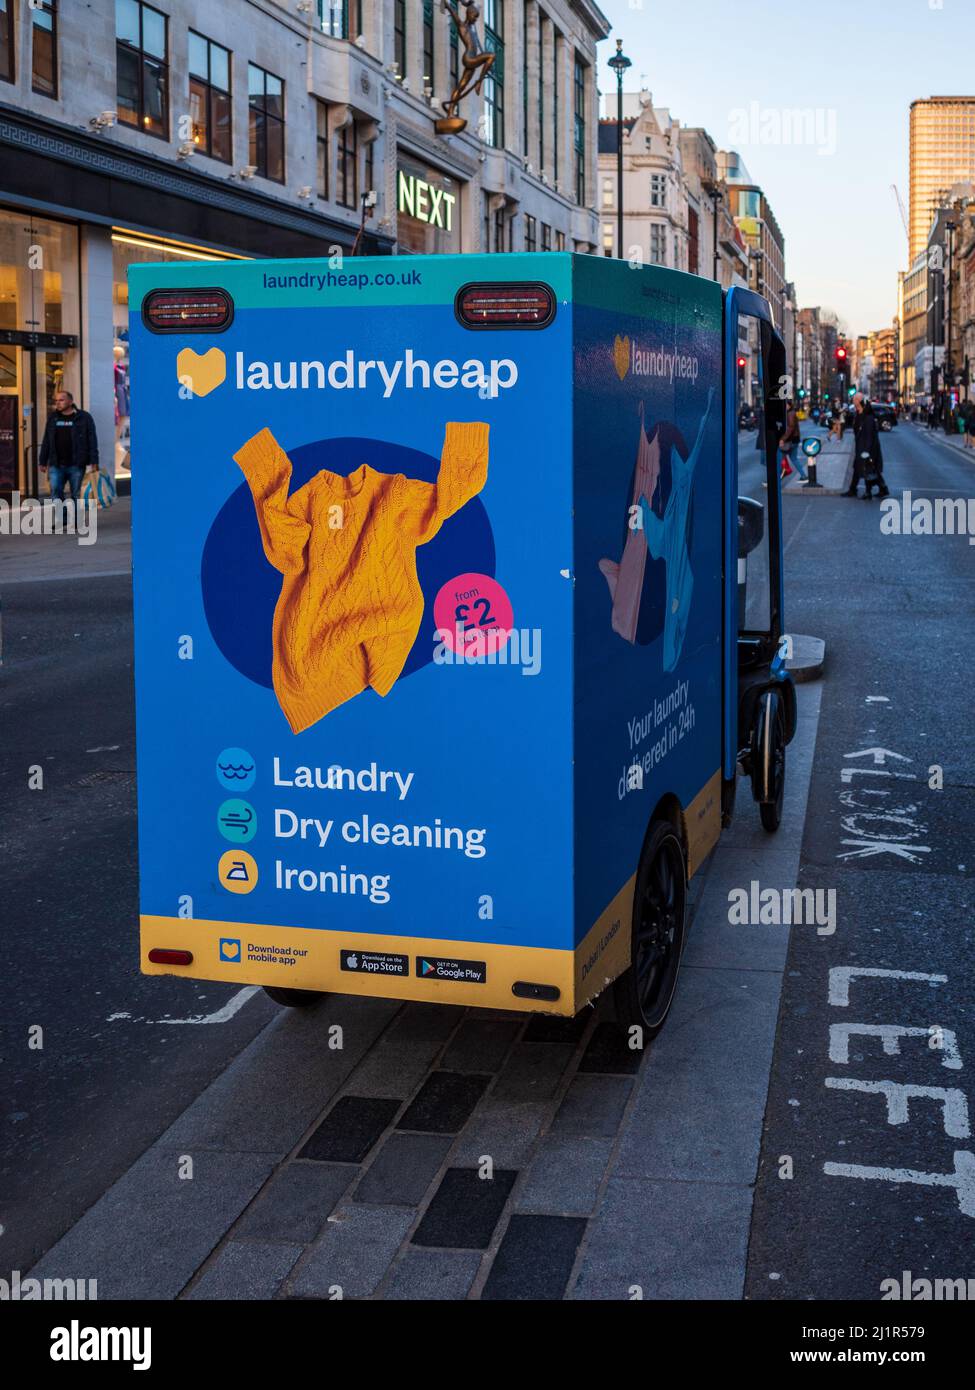 LaundryHeap ECO friendly nettoyage blanchisserie service de livraison Londres. Fondée en 2014, elle offre un service de blanchisserie et de livraison en ligne. Banque D'Images